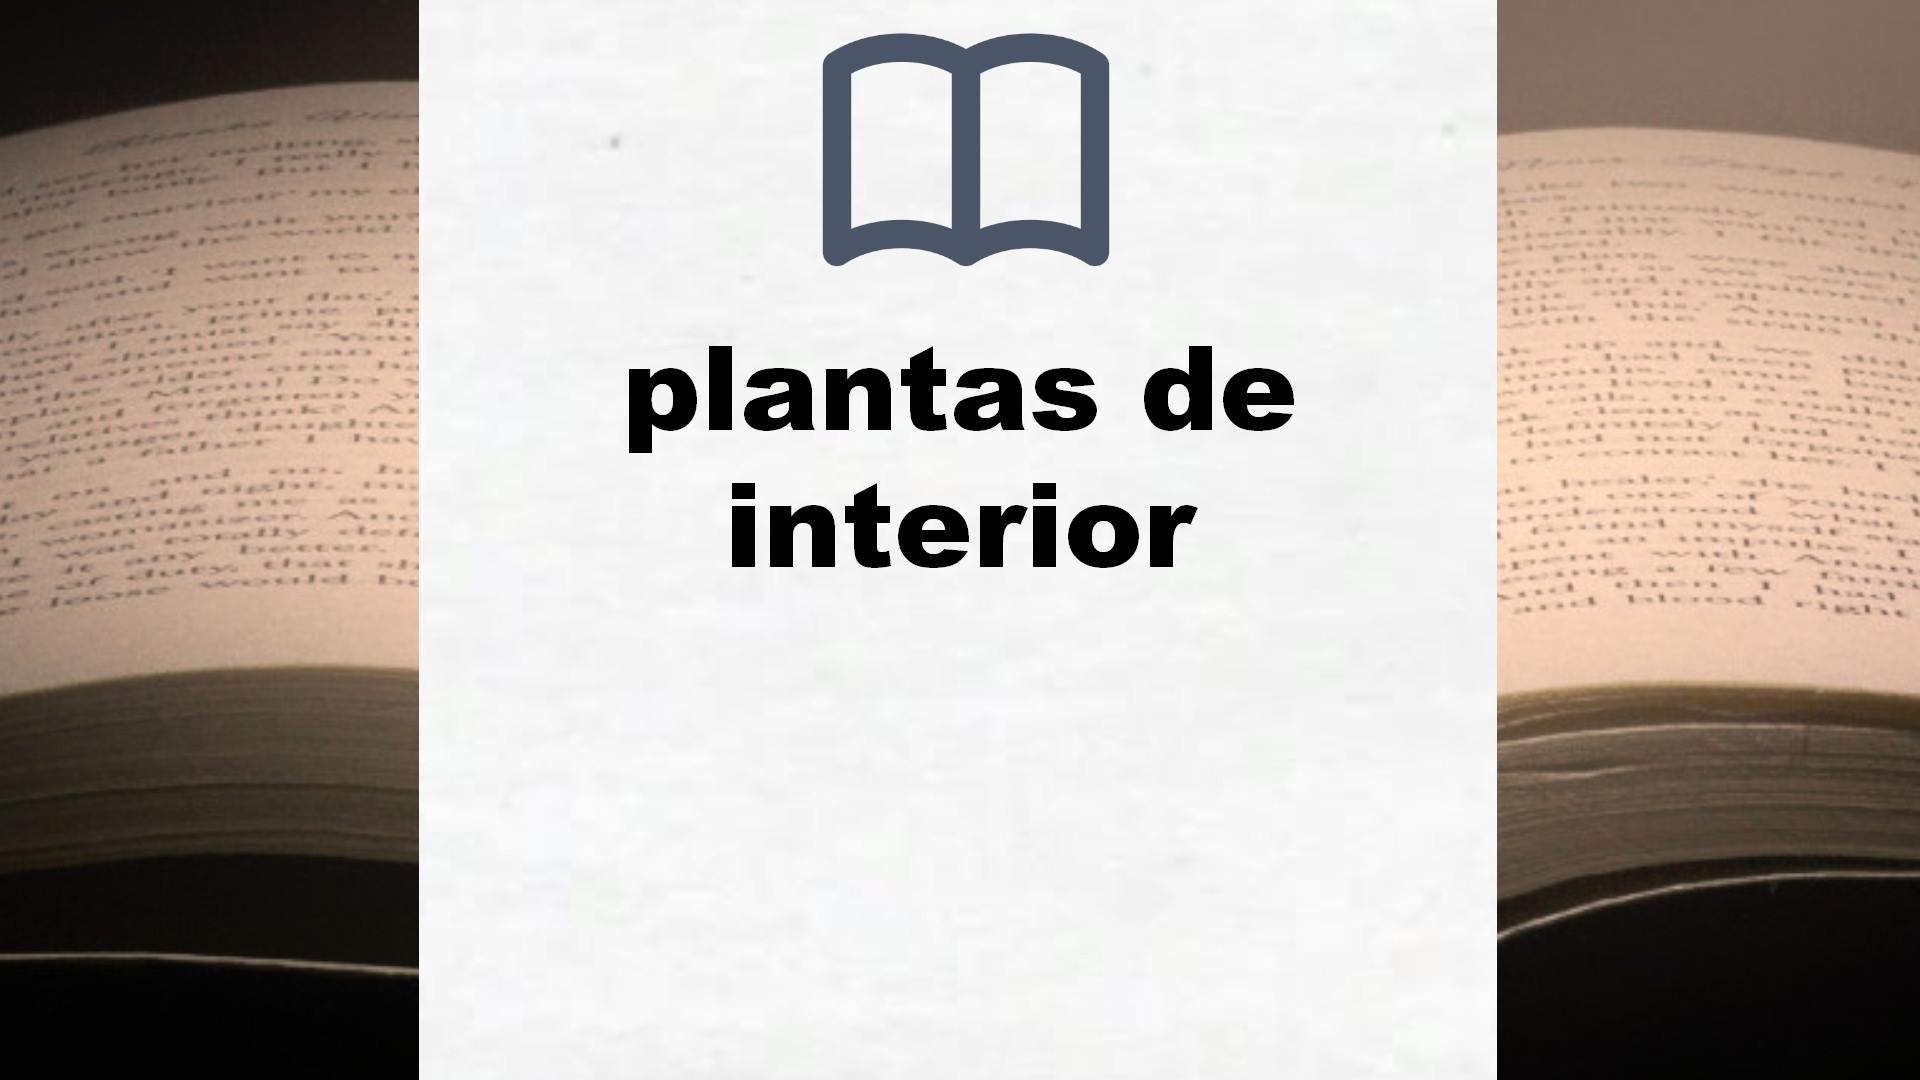 Libros sobre plantas de interior